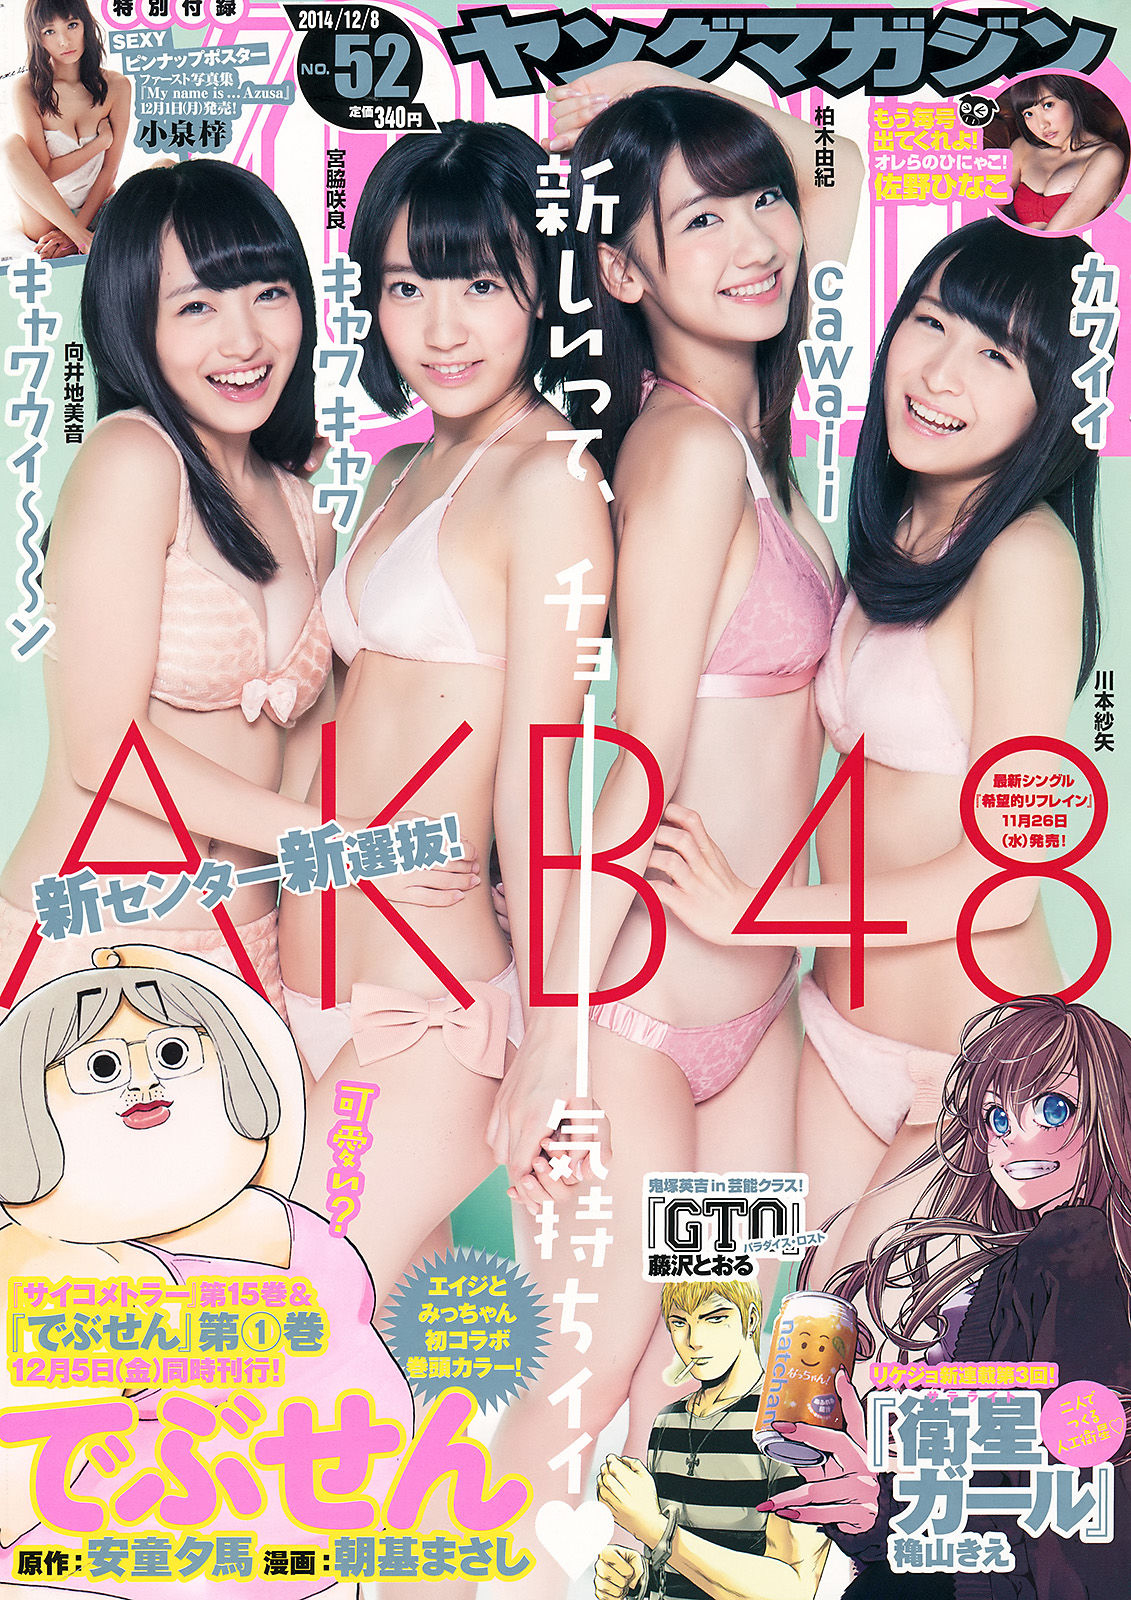 [Young Magazine]杂志:AKB48无圣光私房照片在线浏览(14P)